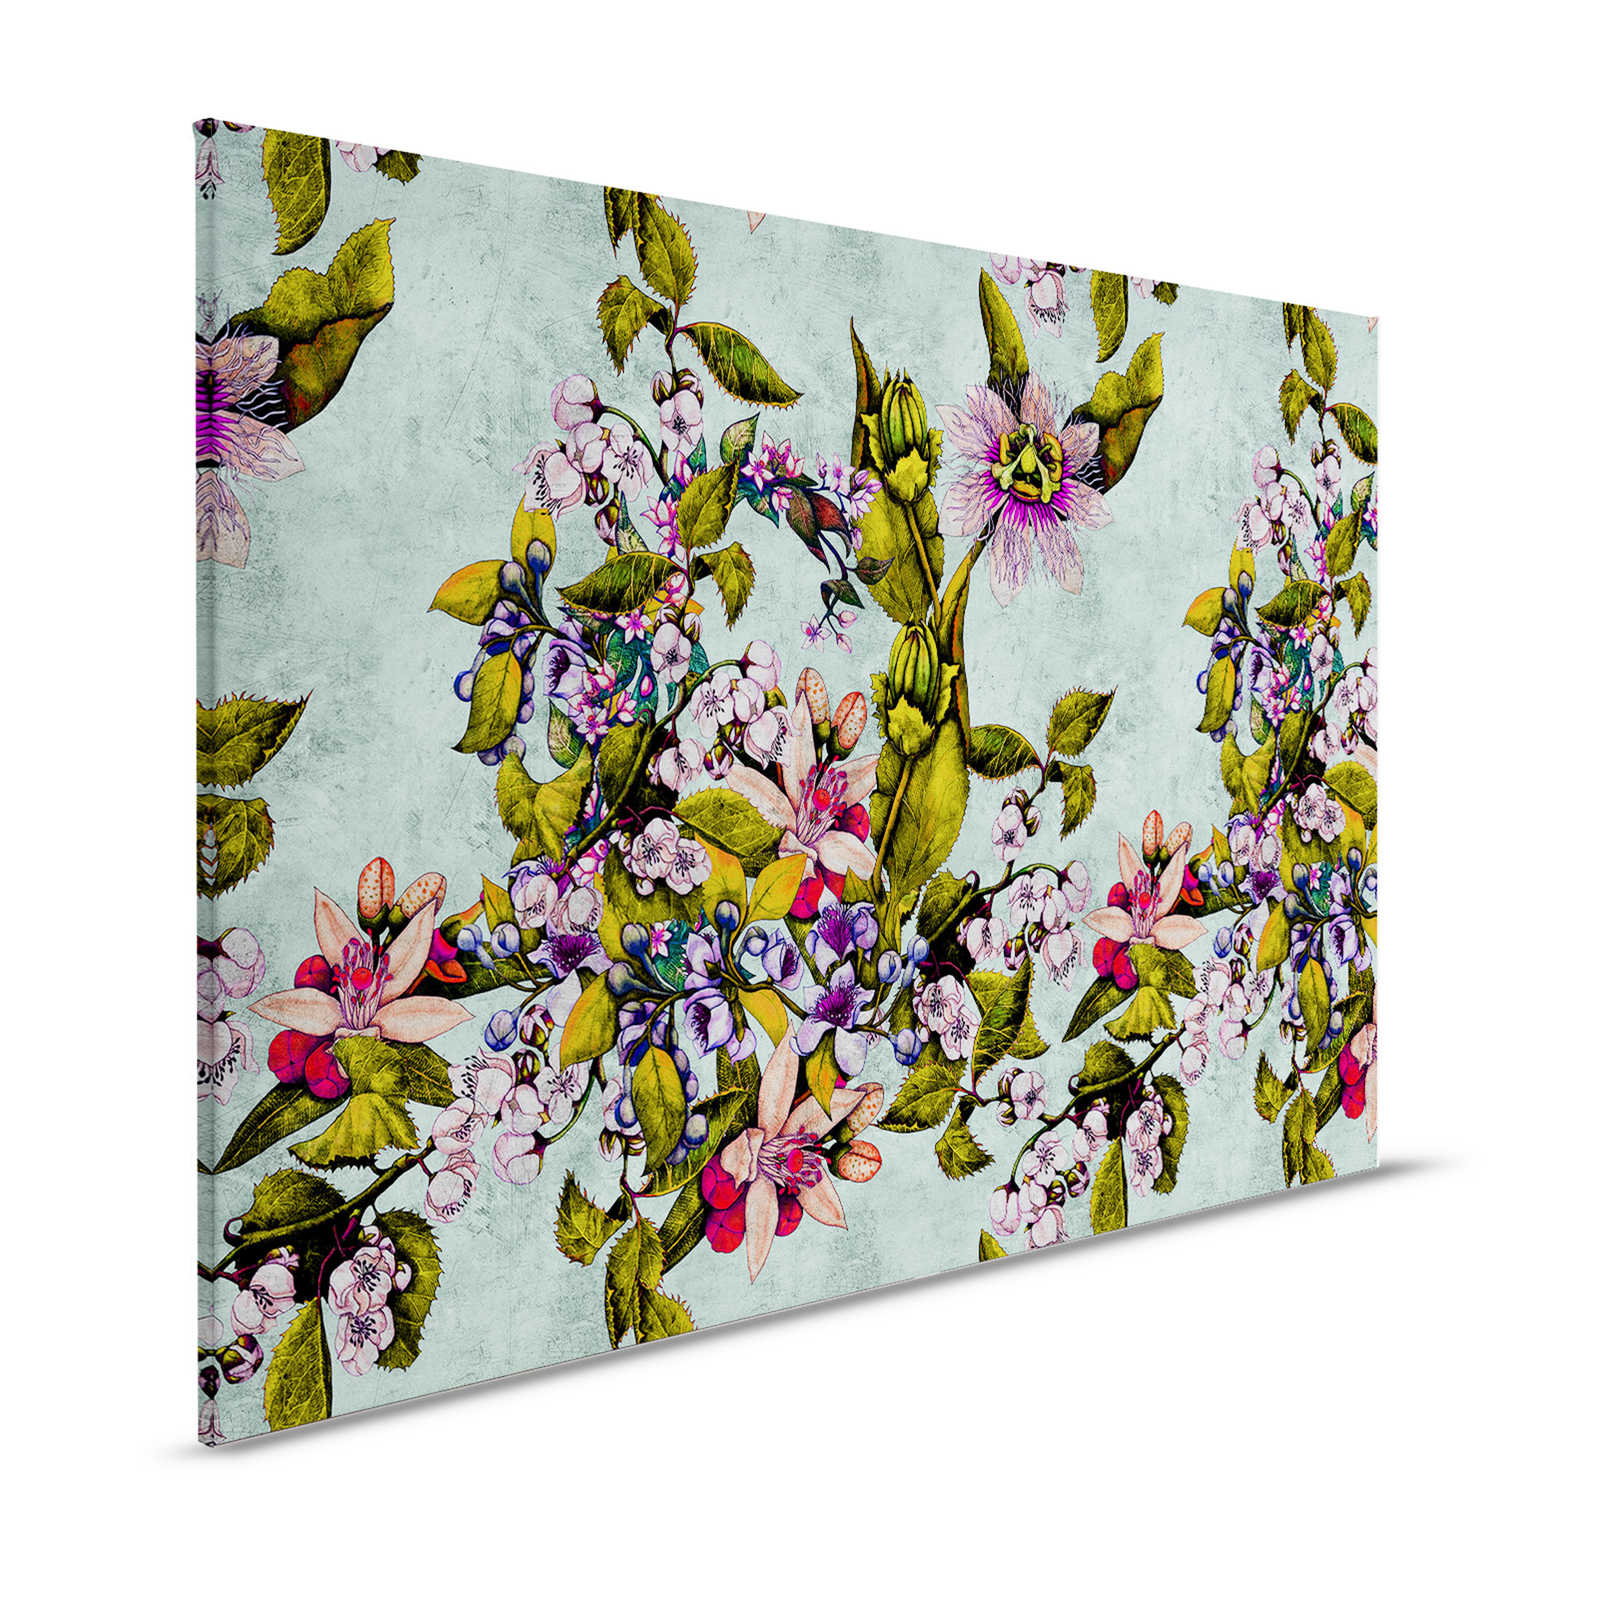 Pasión tropical 2 - Cuadro en lienzo con flores y capullos - 1,20 m x 0,80 m
